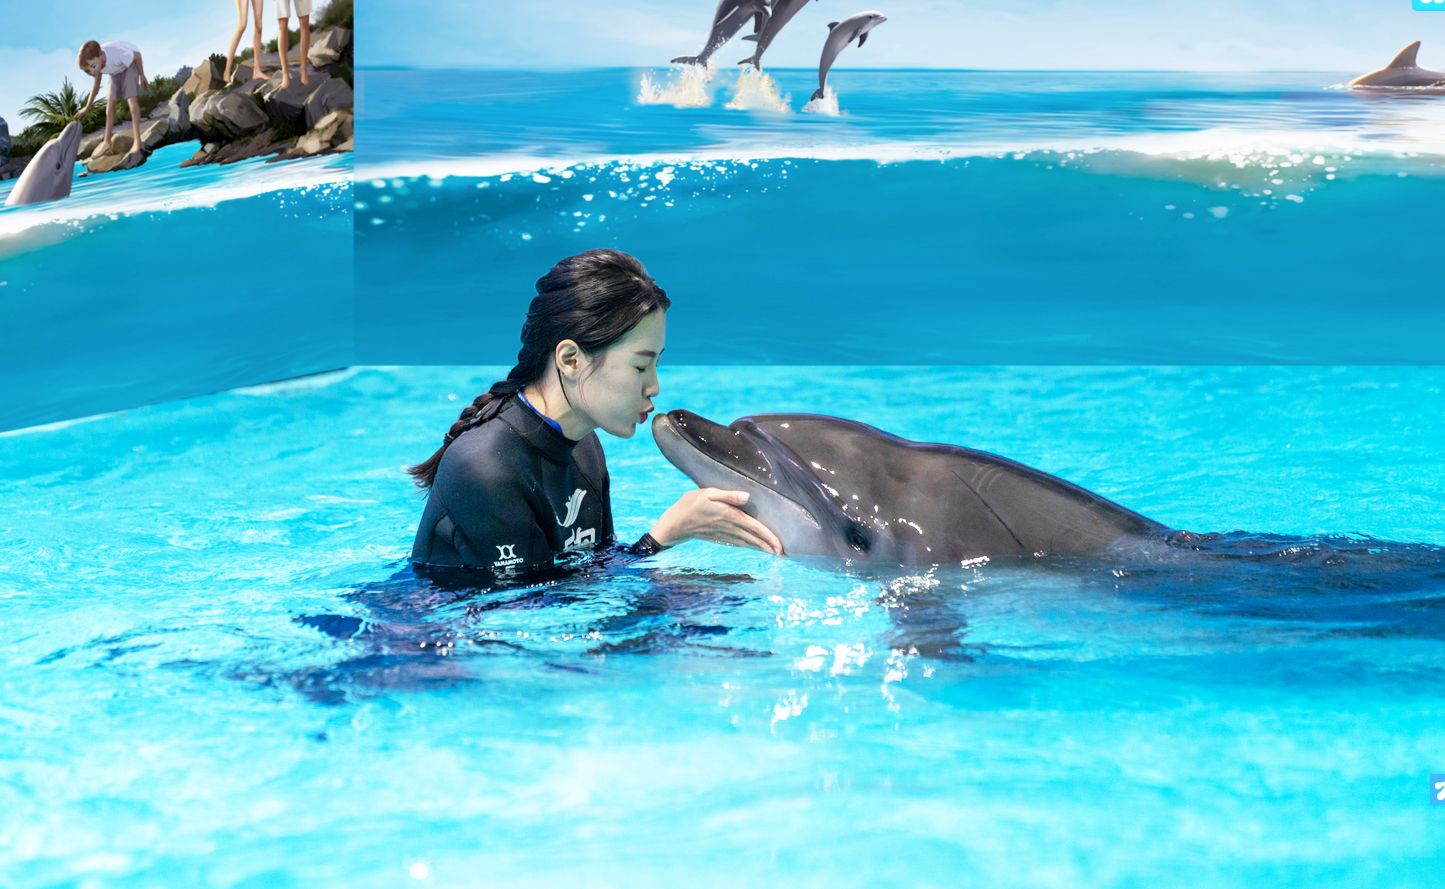 乐岛海洋王国全新项目--邂逅海豚🐬 曾经，与海豚同游只是一个隔着玻璃的美梦，现在，只需来乐岛就能收获